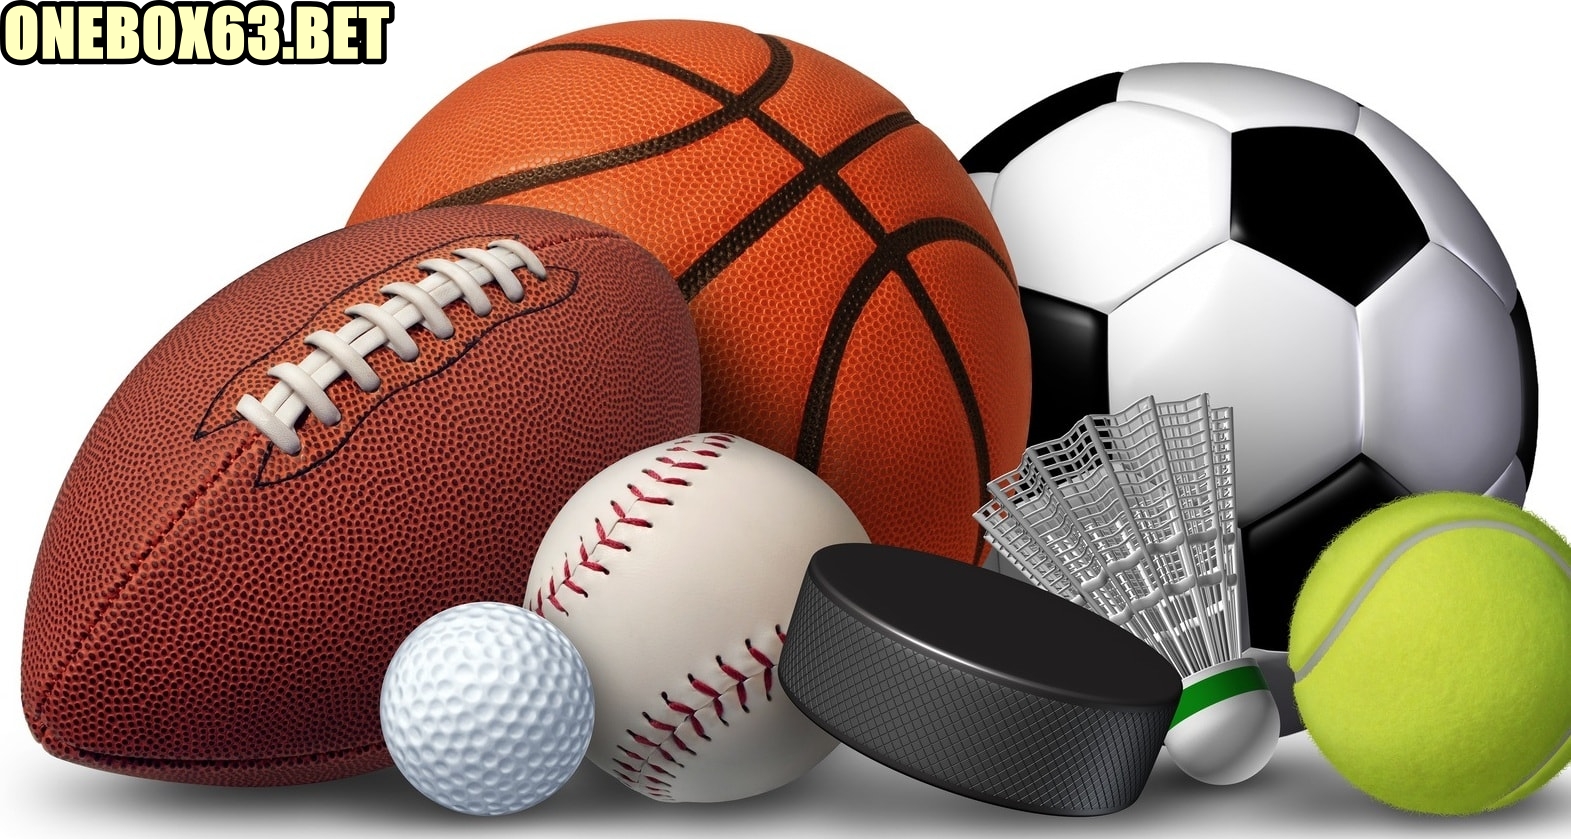 Chuyên mục “Thể thao” tại trang web onebox63.me là gì?